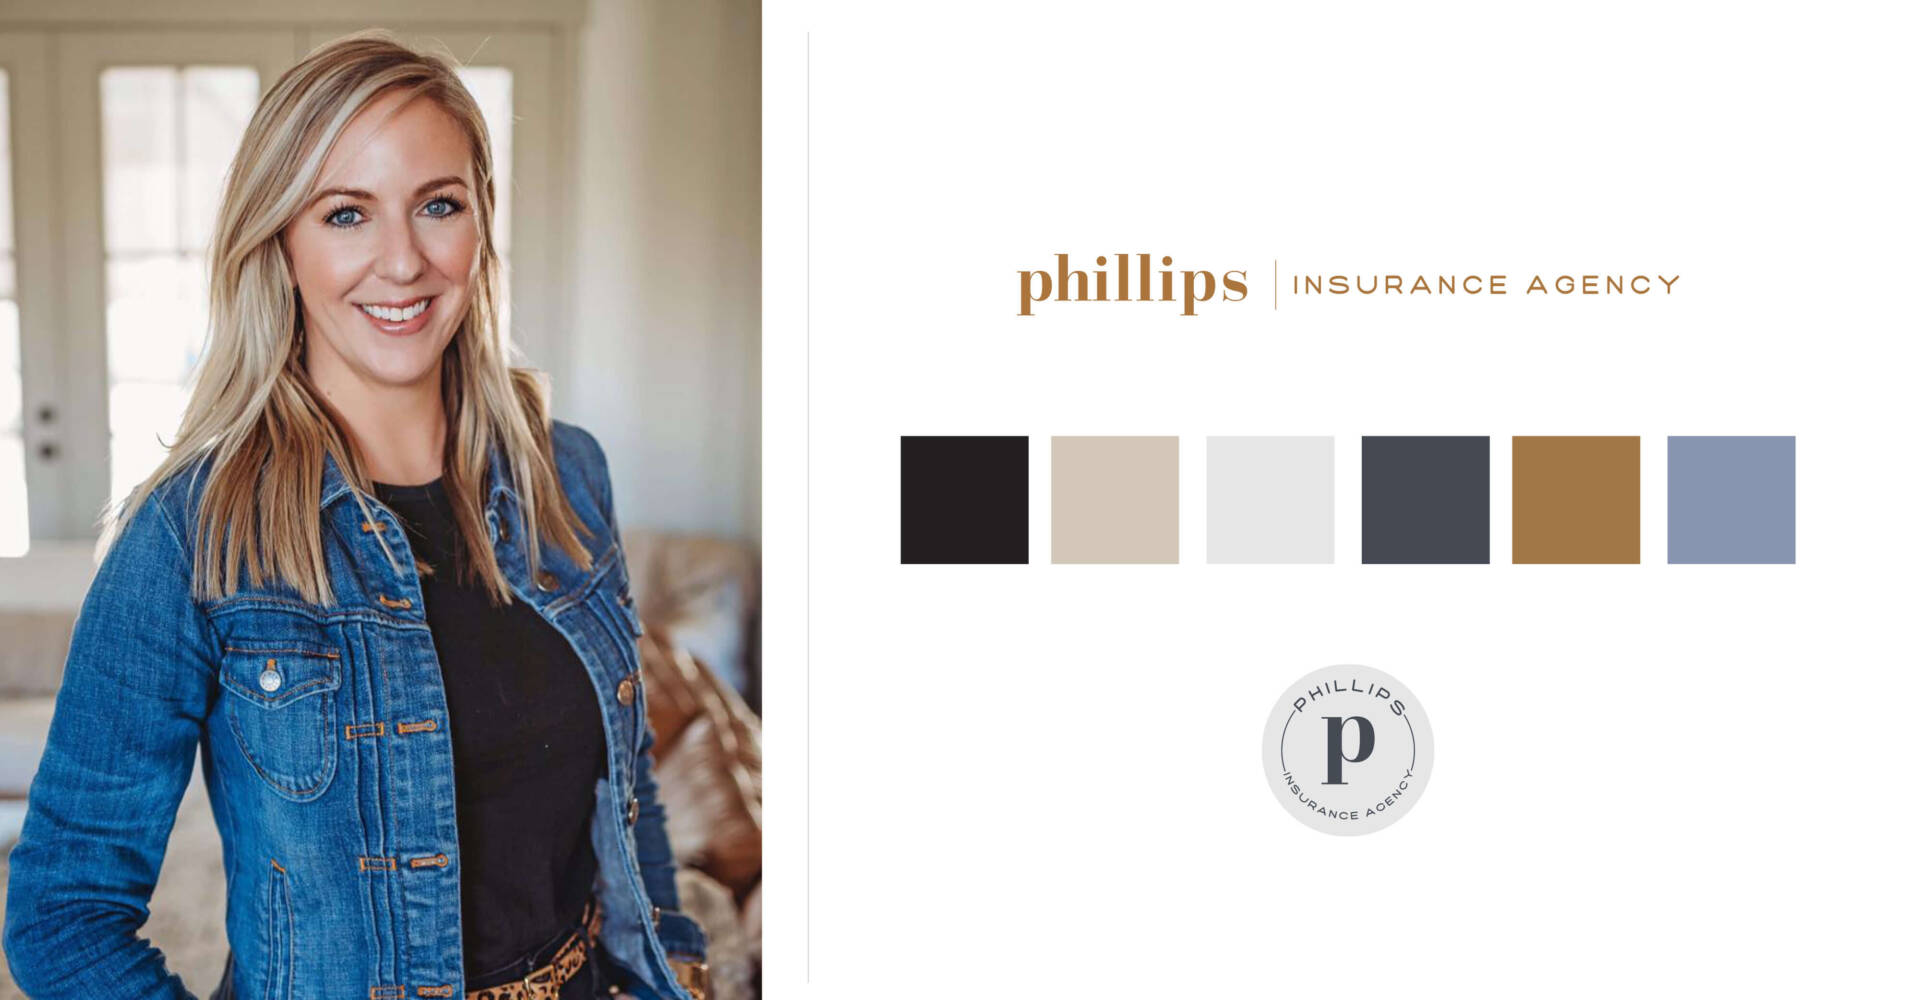 Phillips Insurance Agency Branding